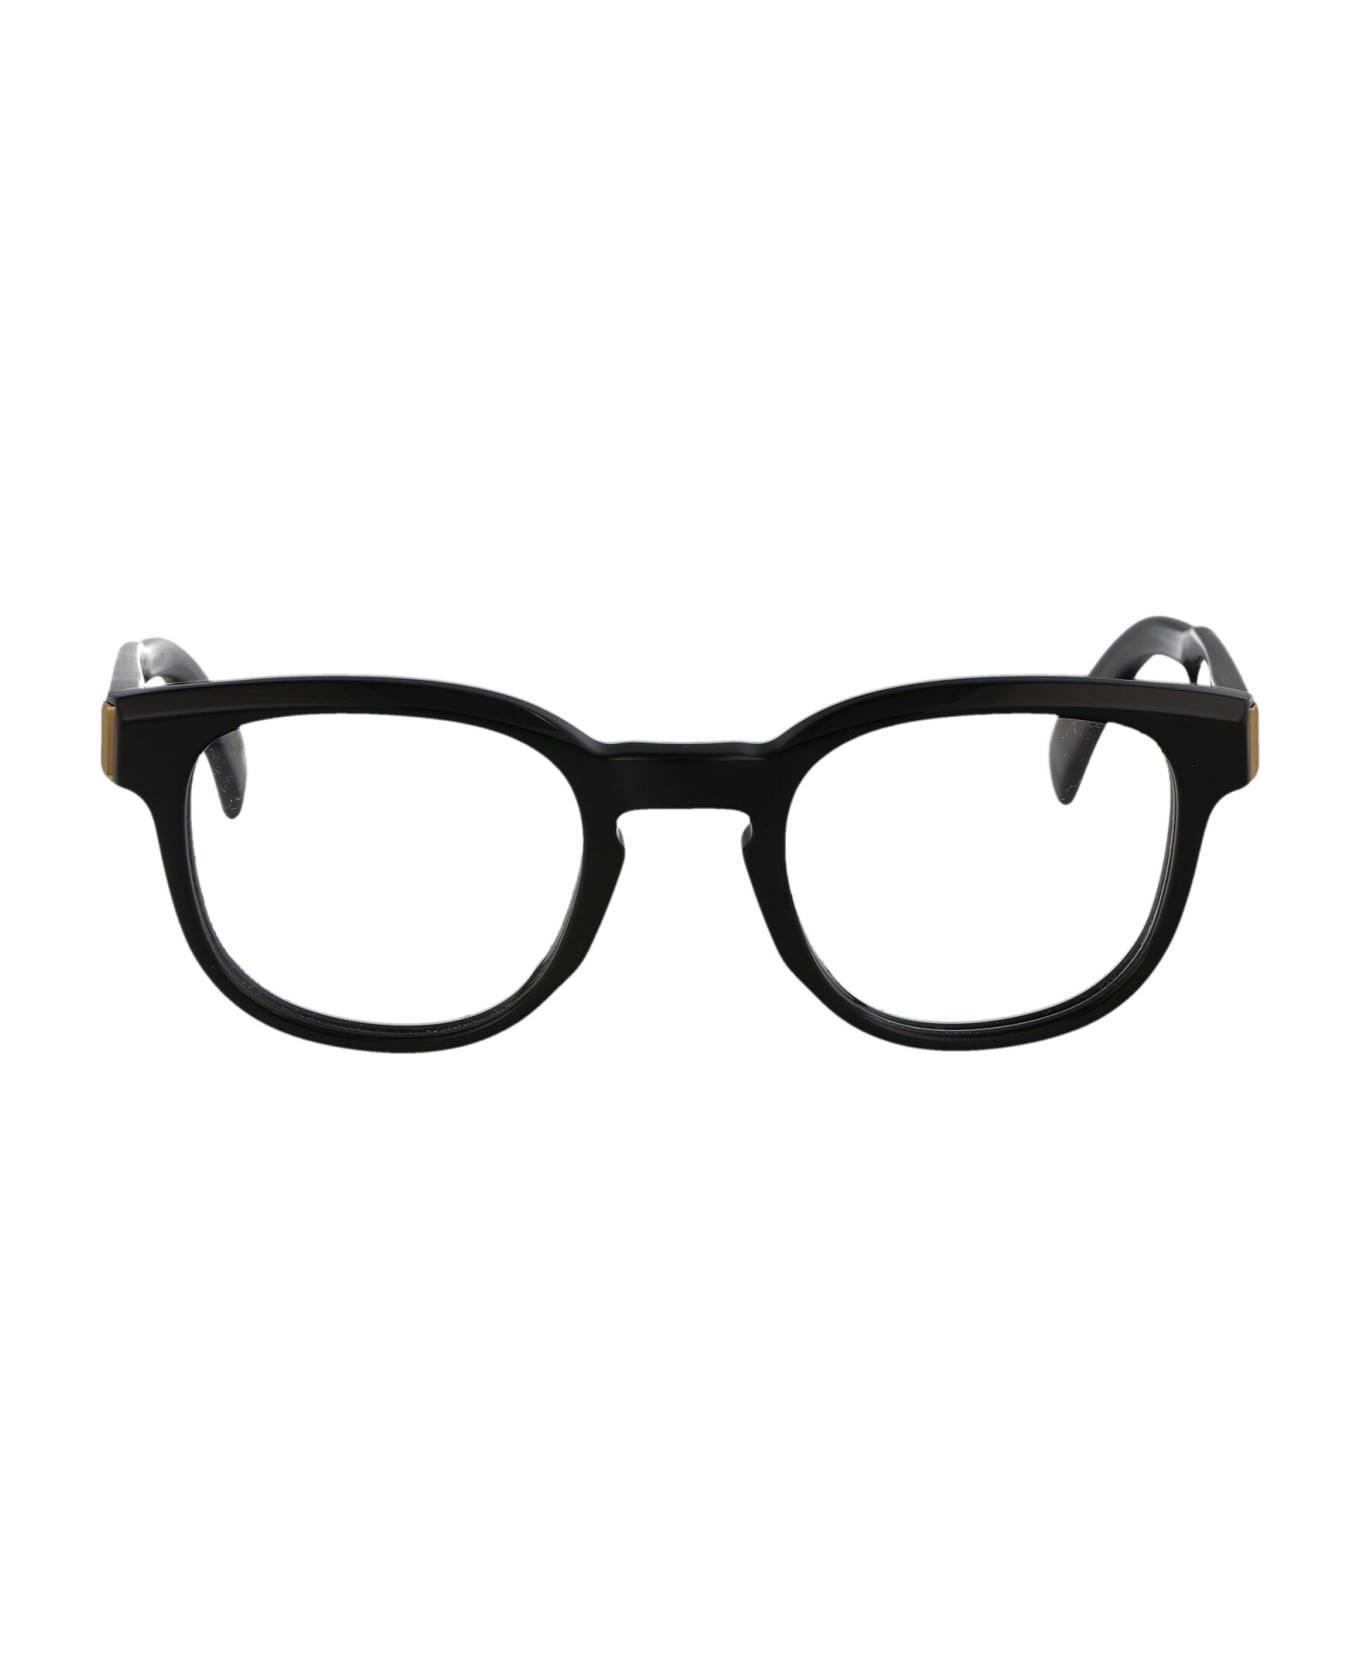 Dunhill Du0003o Glasses - 001 BLACK BLACK TRANSPARENT